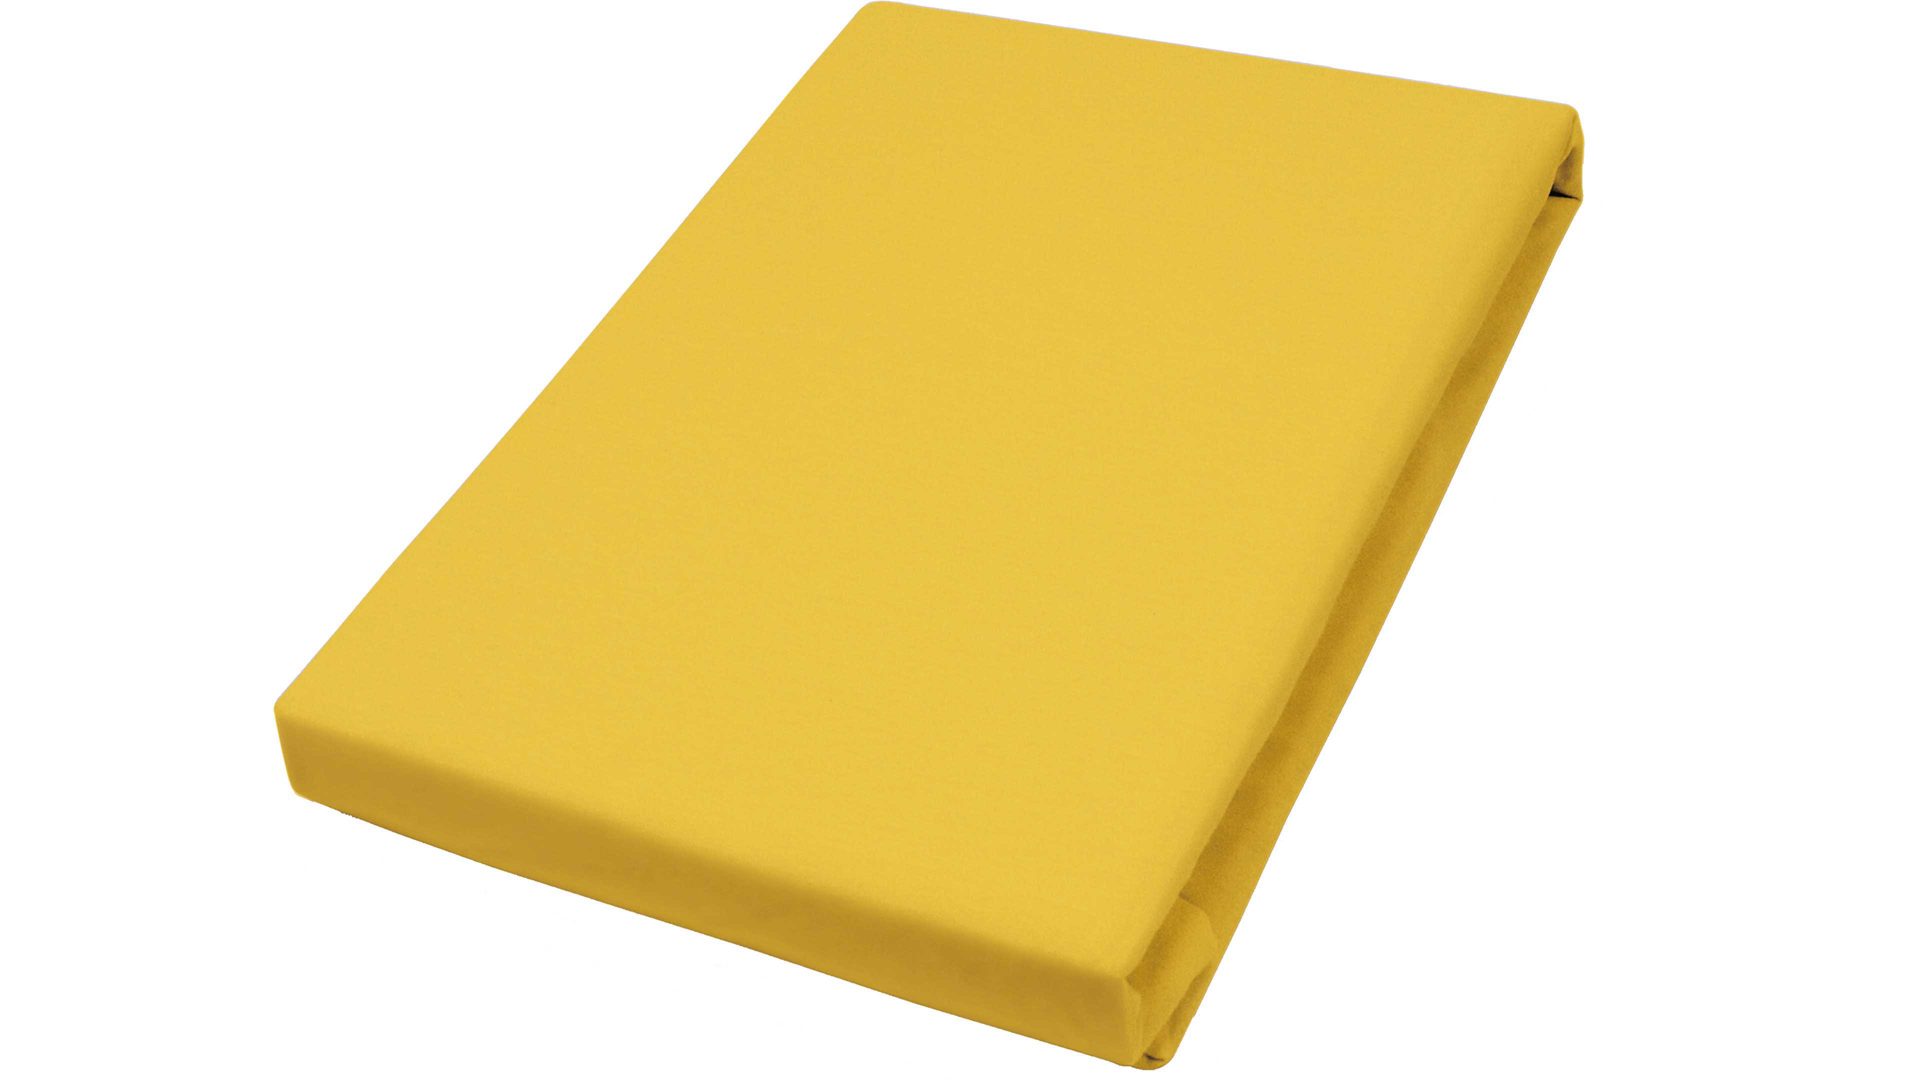 Spannbettlaken H.g. hahn haustextilien aus Stoff in Gelb Spannbettlaken gelber Baumwolljersey - ca. 190 x 200 cm